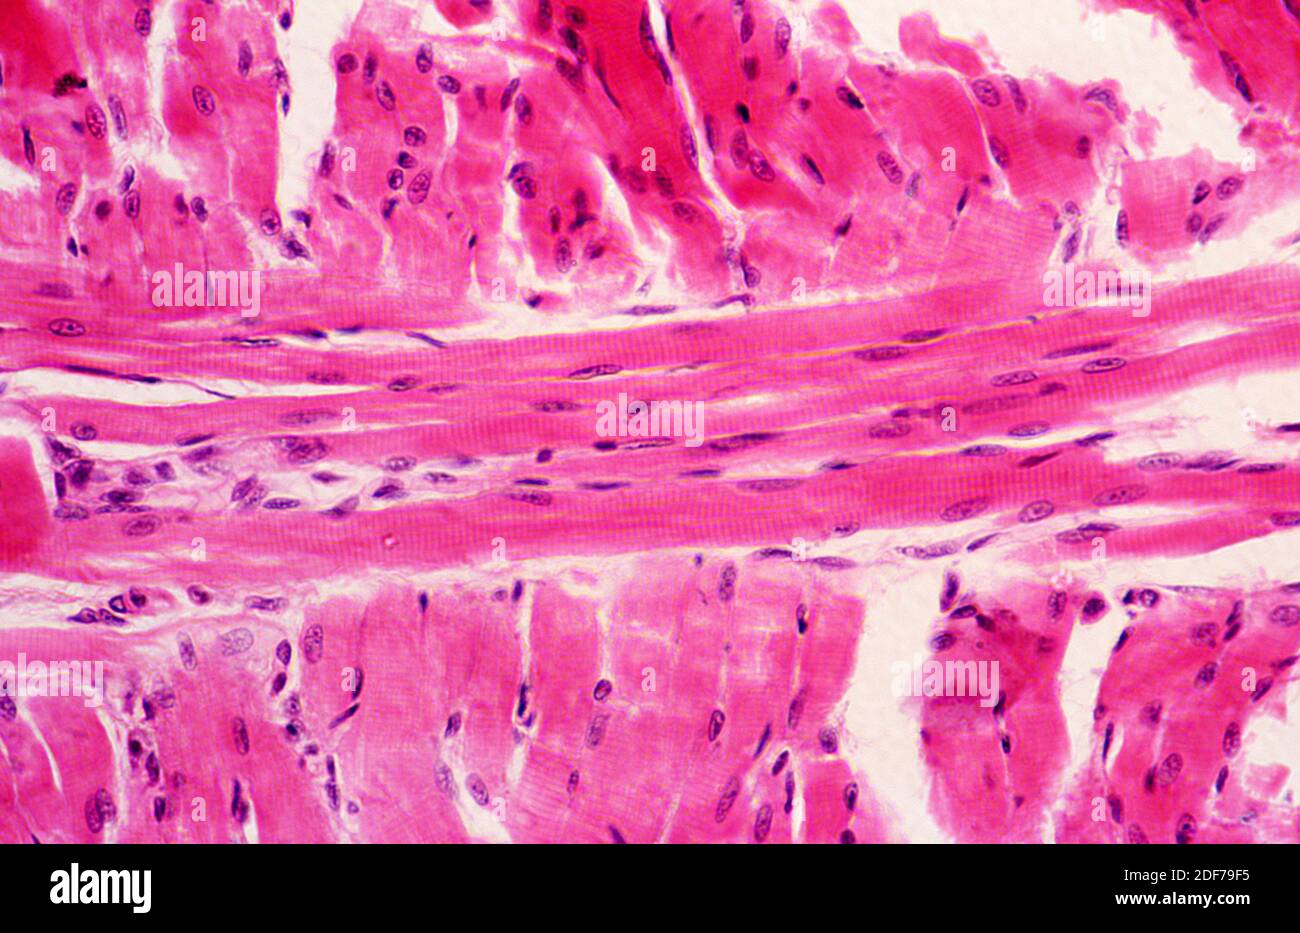 Músculo esquelético, sección longitudinal. Fotomicrografía. Foto de stock